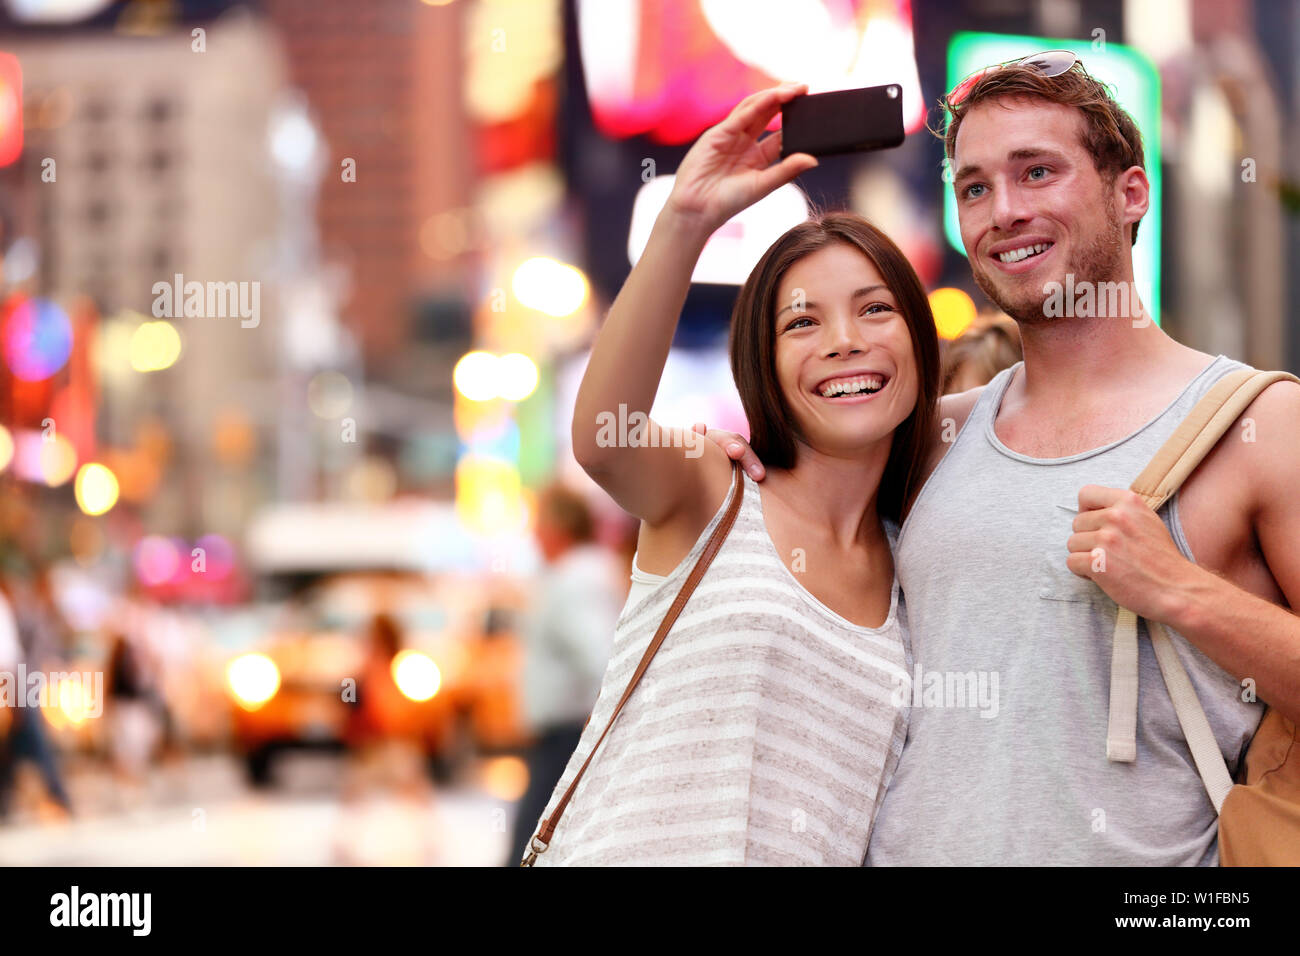 Travel Tourist giovane tenendo selfie con lo smartphone in New York City, Stati Uniti d'America. Self-portrait foto su Times Square di notte. Bella giovani turisti divertendosi, Manhattan STATI UNITI D'AMERICA. Donna asiatica, uomo caucasico Foto Stock